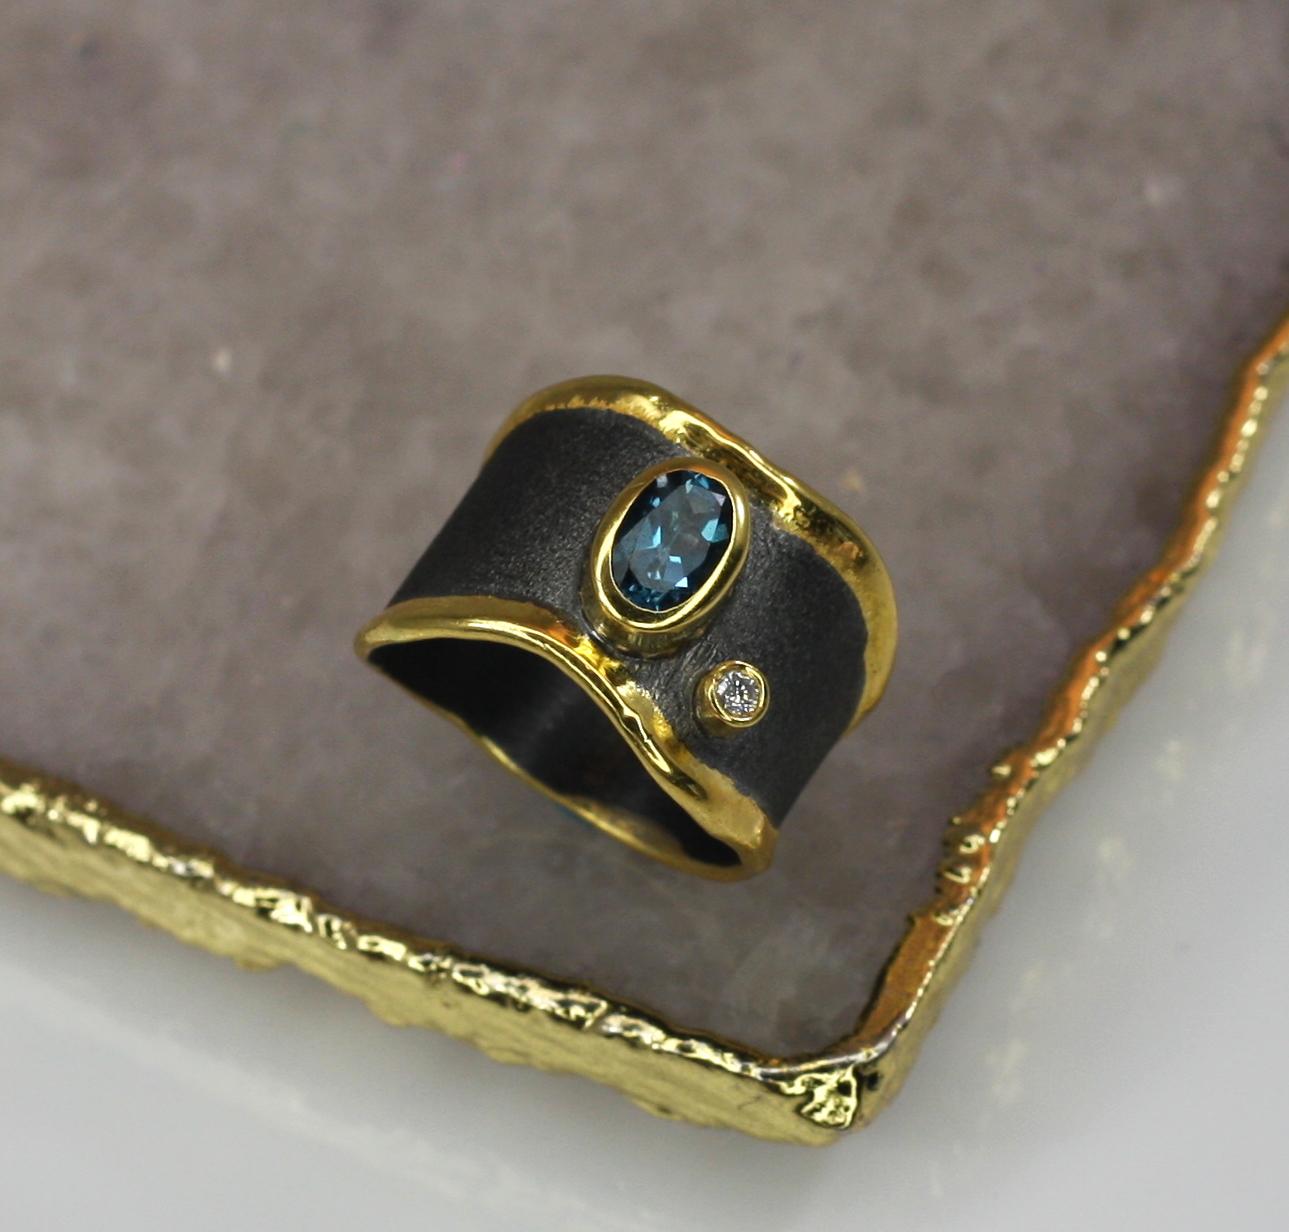 Der breite Ring von Yianni Creations aus der Eclyps-Kollektion ist aus feinem 950er Silber gefertigt und mit schwarzem Rhodium auf dem einzigartigen gebürsteten Hintergrund beschichtet, was ihm einen atemberaubenden Look verleiht. Das wunderschöne